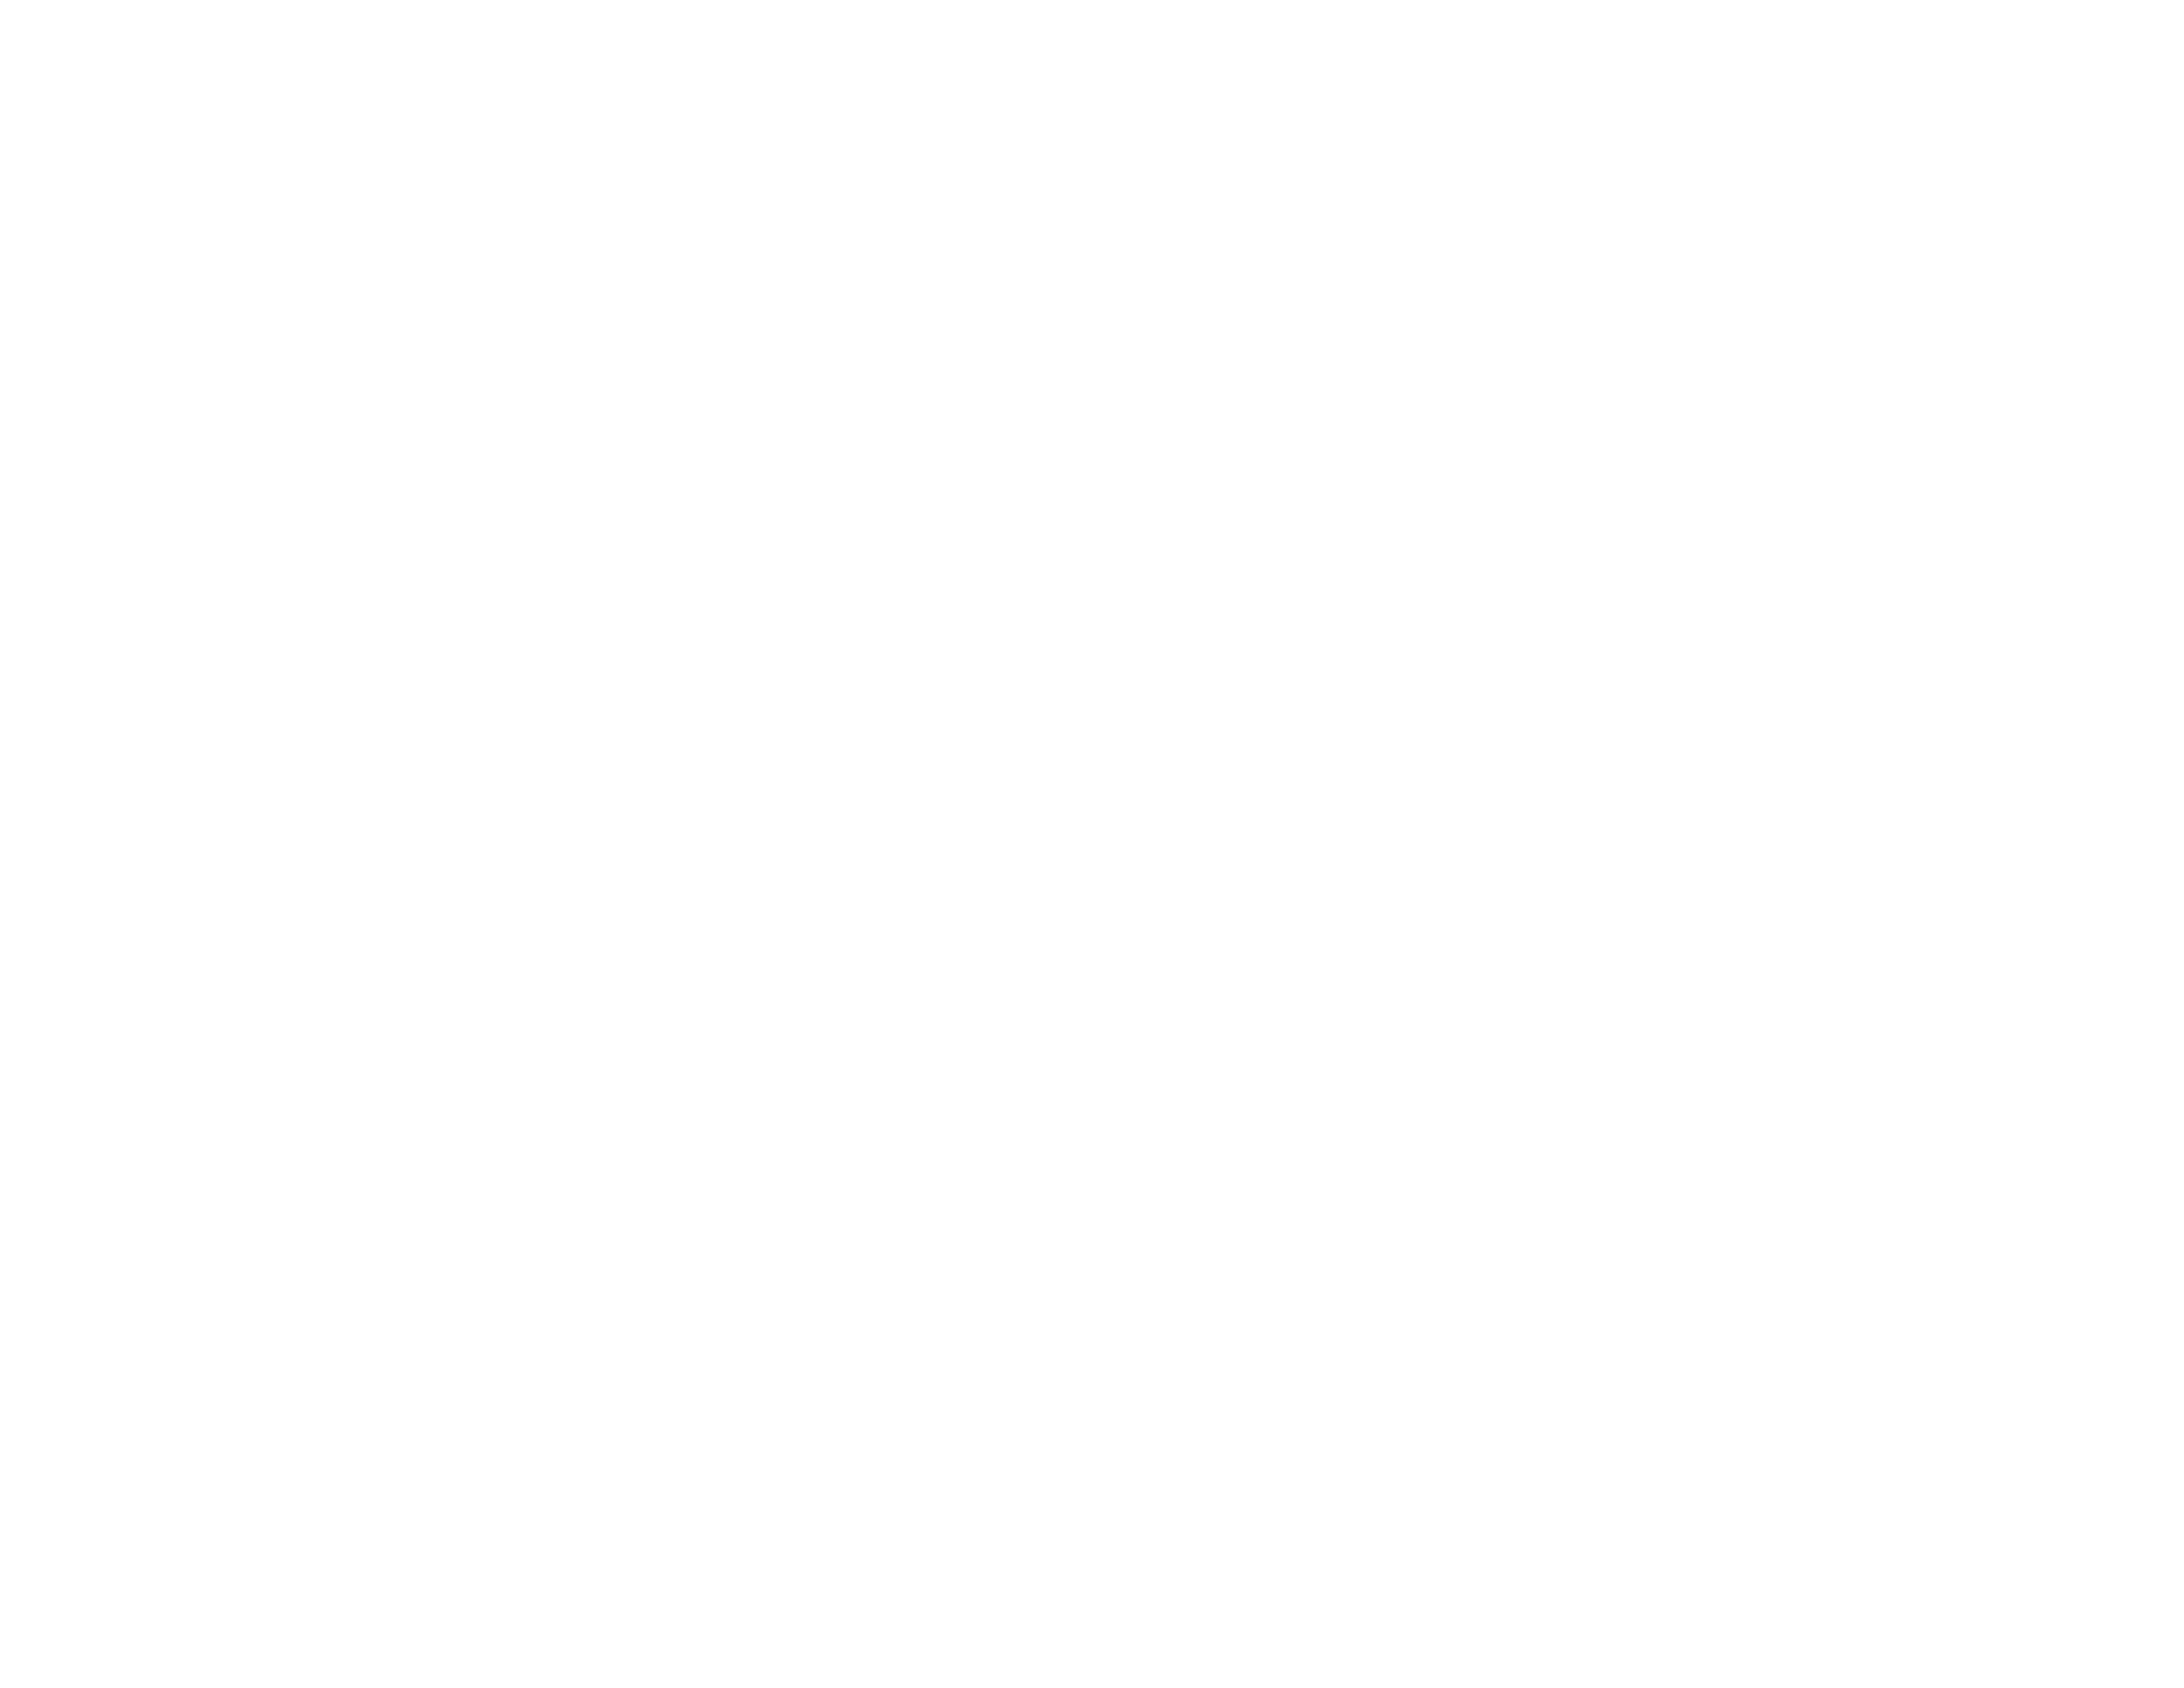 Short Term Sentence